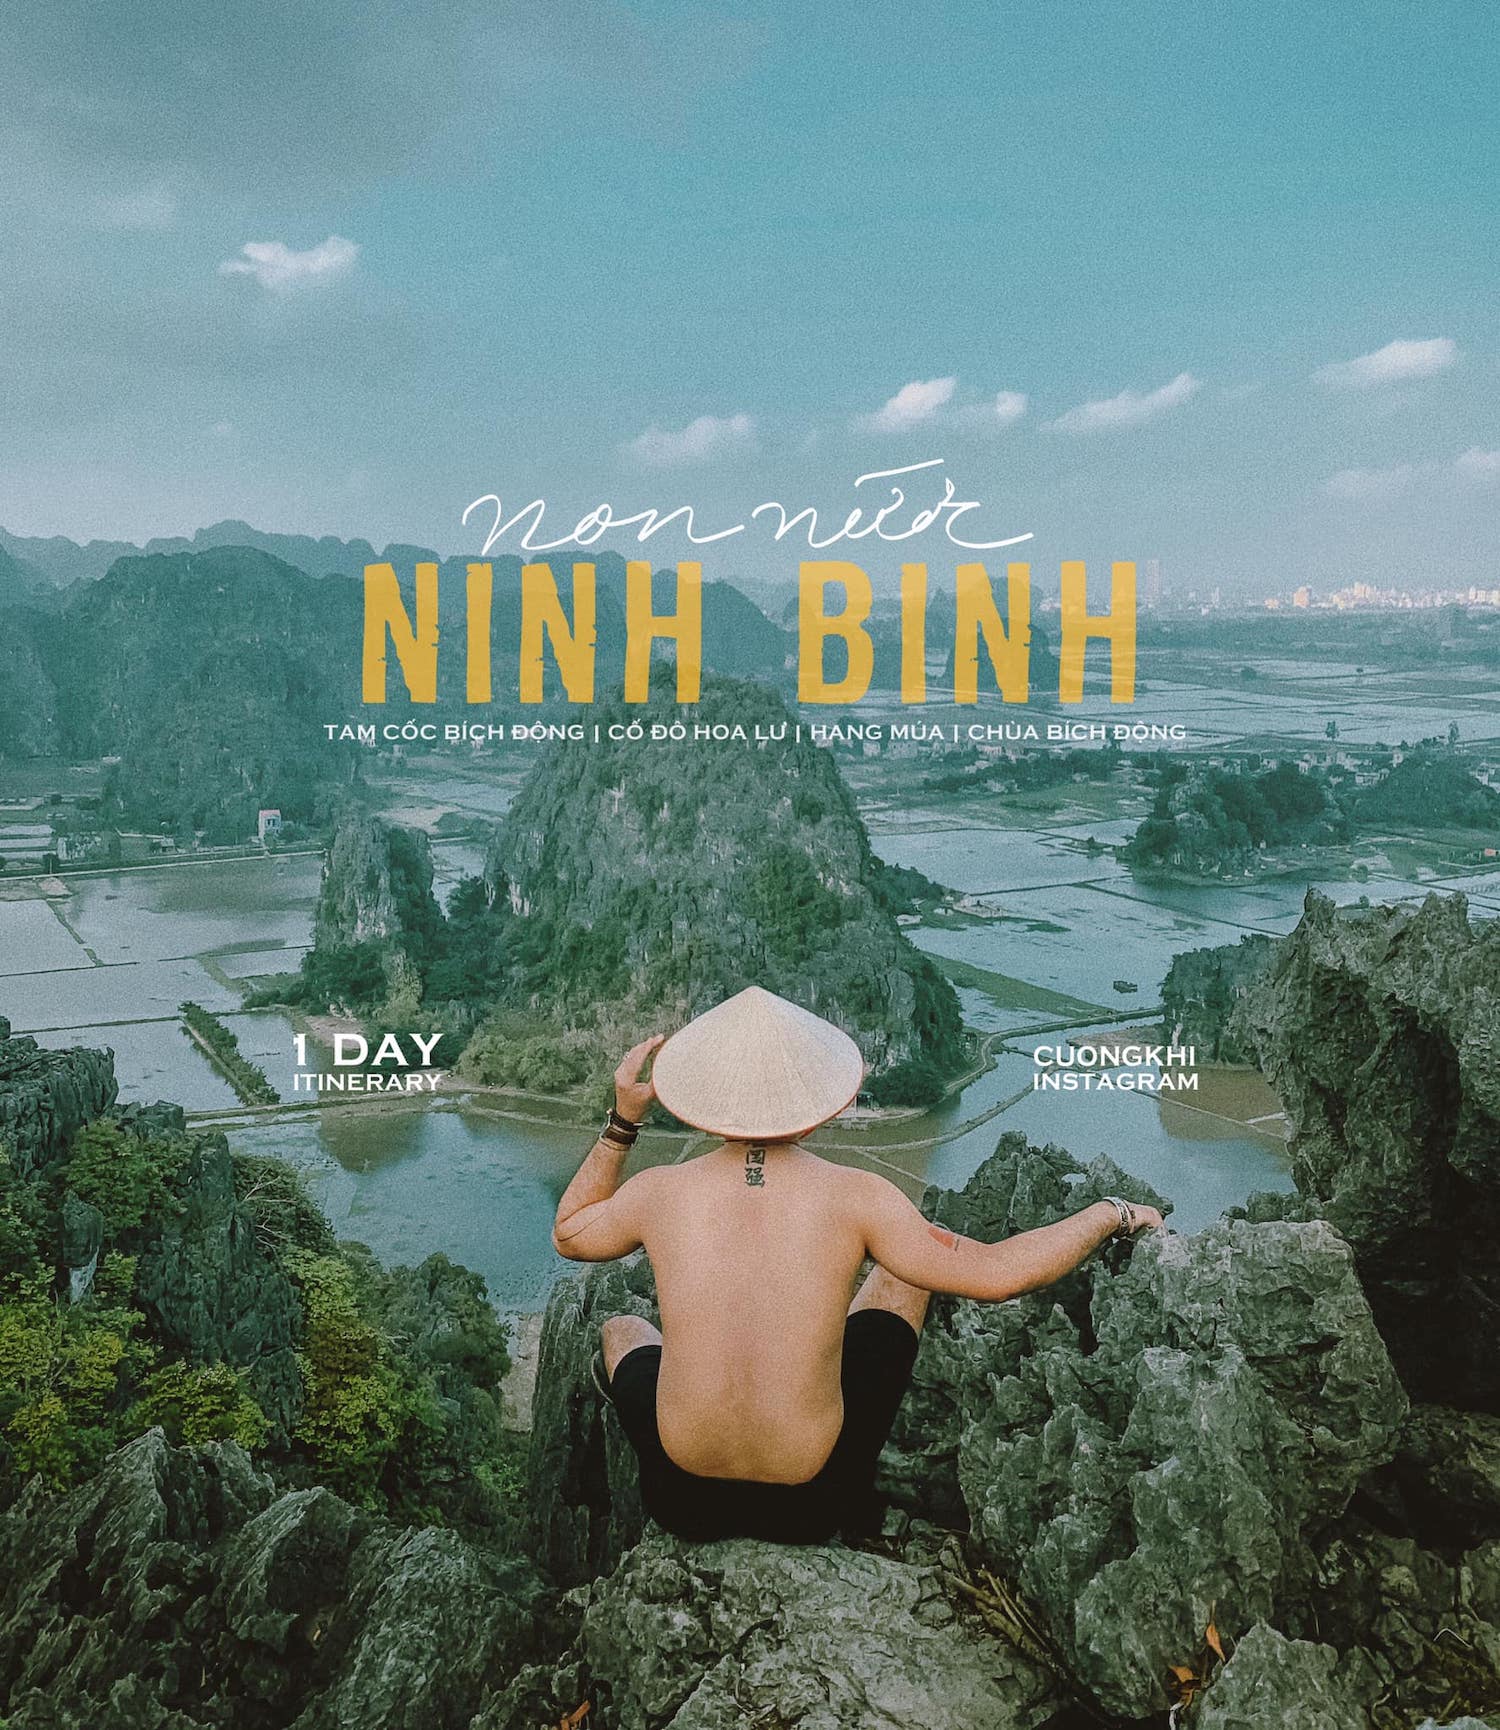 Đón xem review 1 ngày ở Ninh Bình từ anh chàng Cường Quốc Phạm 2